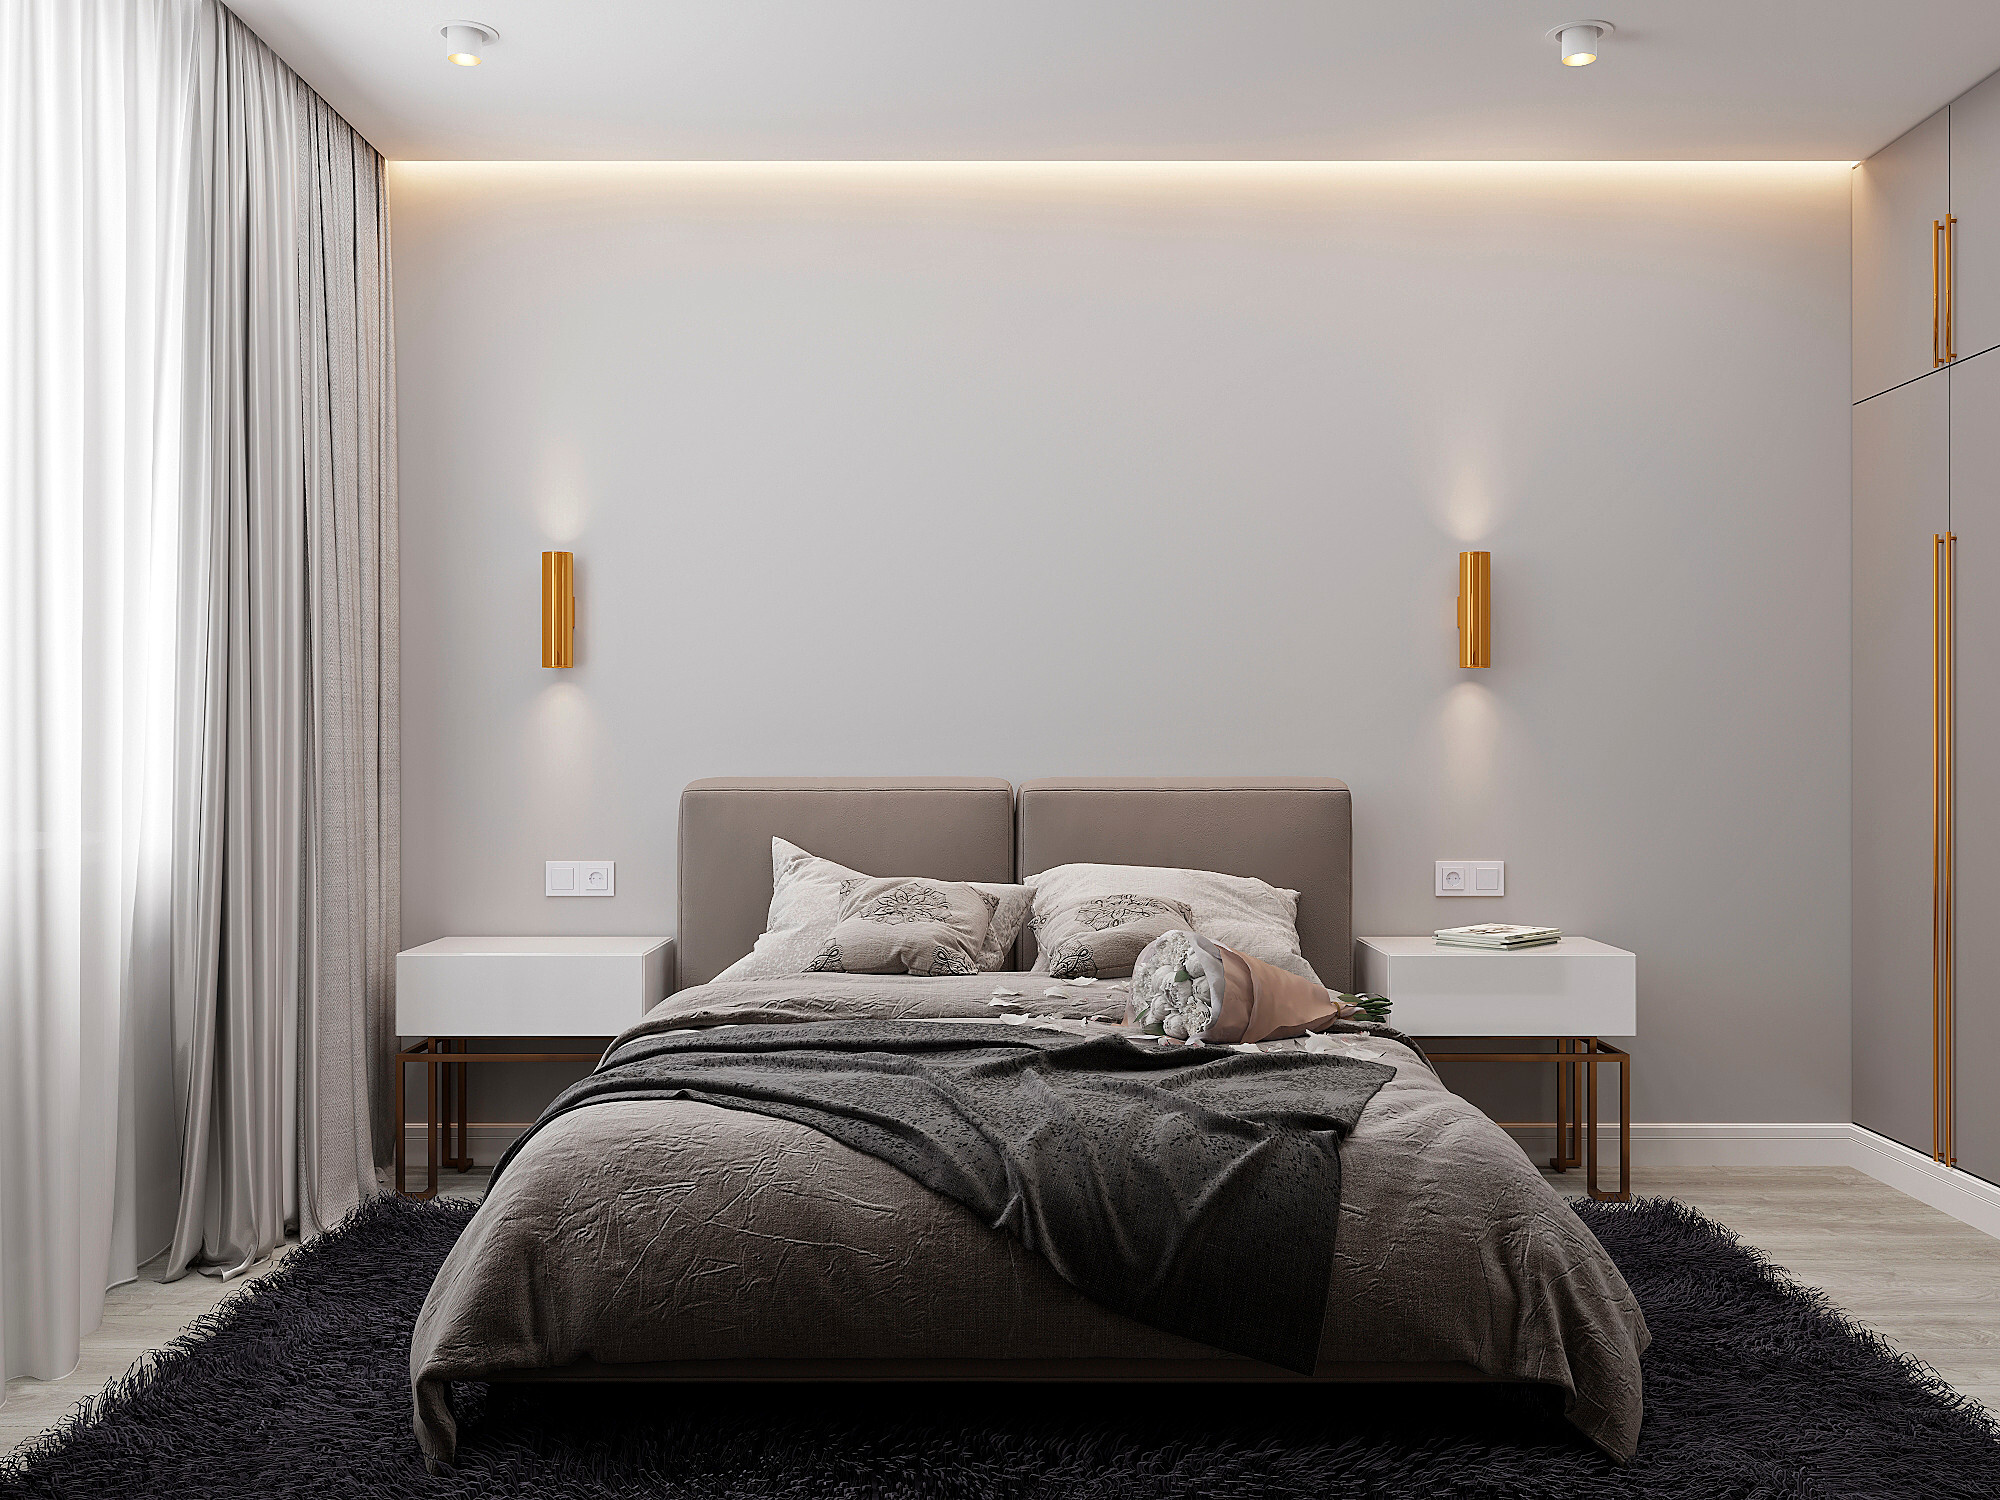 Интерьер спальни cветовыми линиями, подсветкой настенной и подсветкой светодиодной